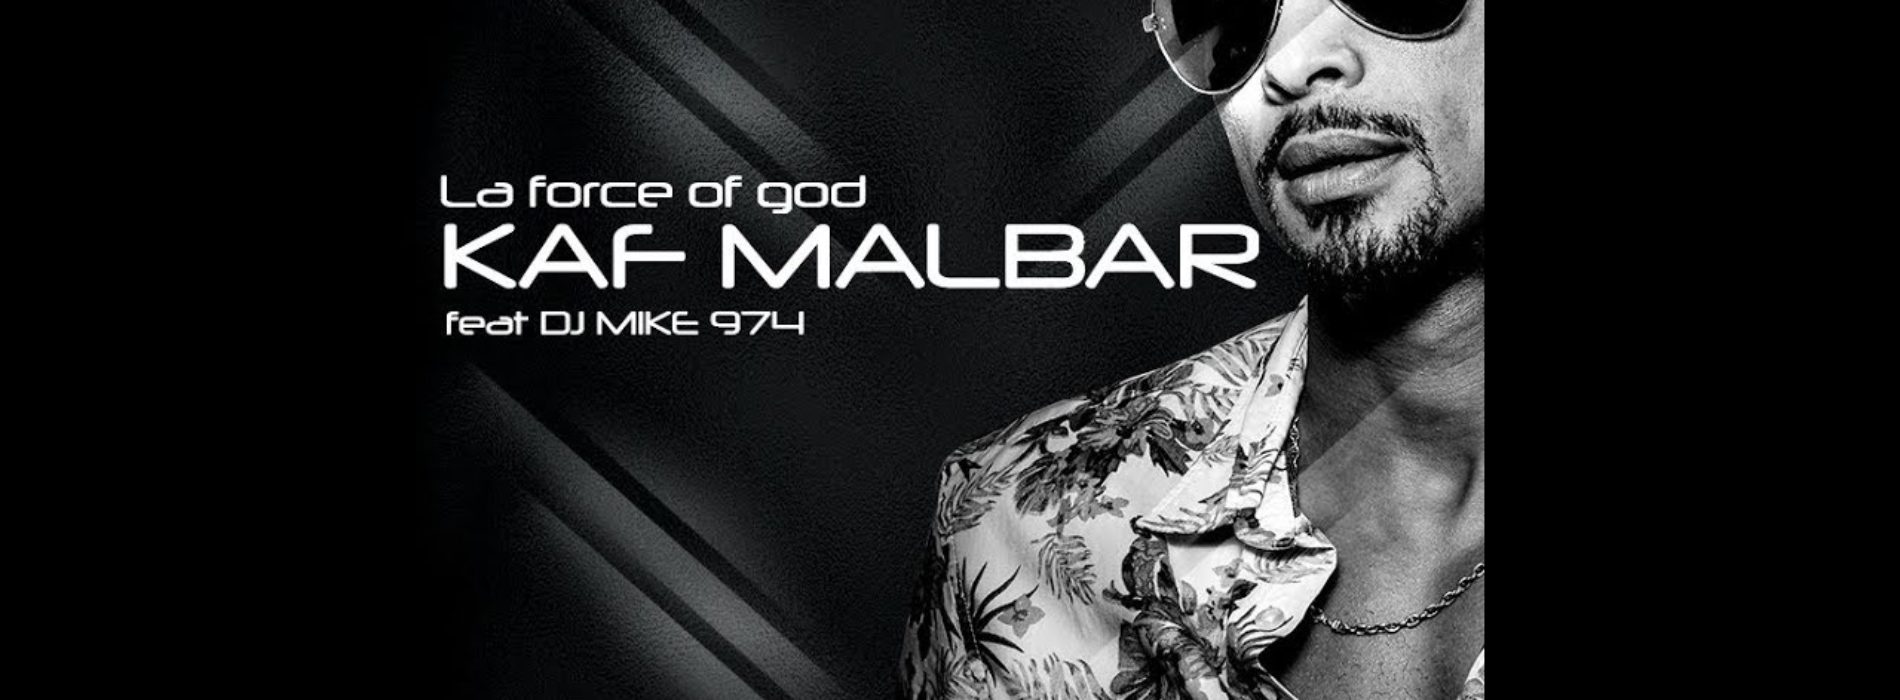 KAF MALBAR ft. Dj MIKE 974 – La force of god (clip officiel) – Mars 2018